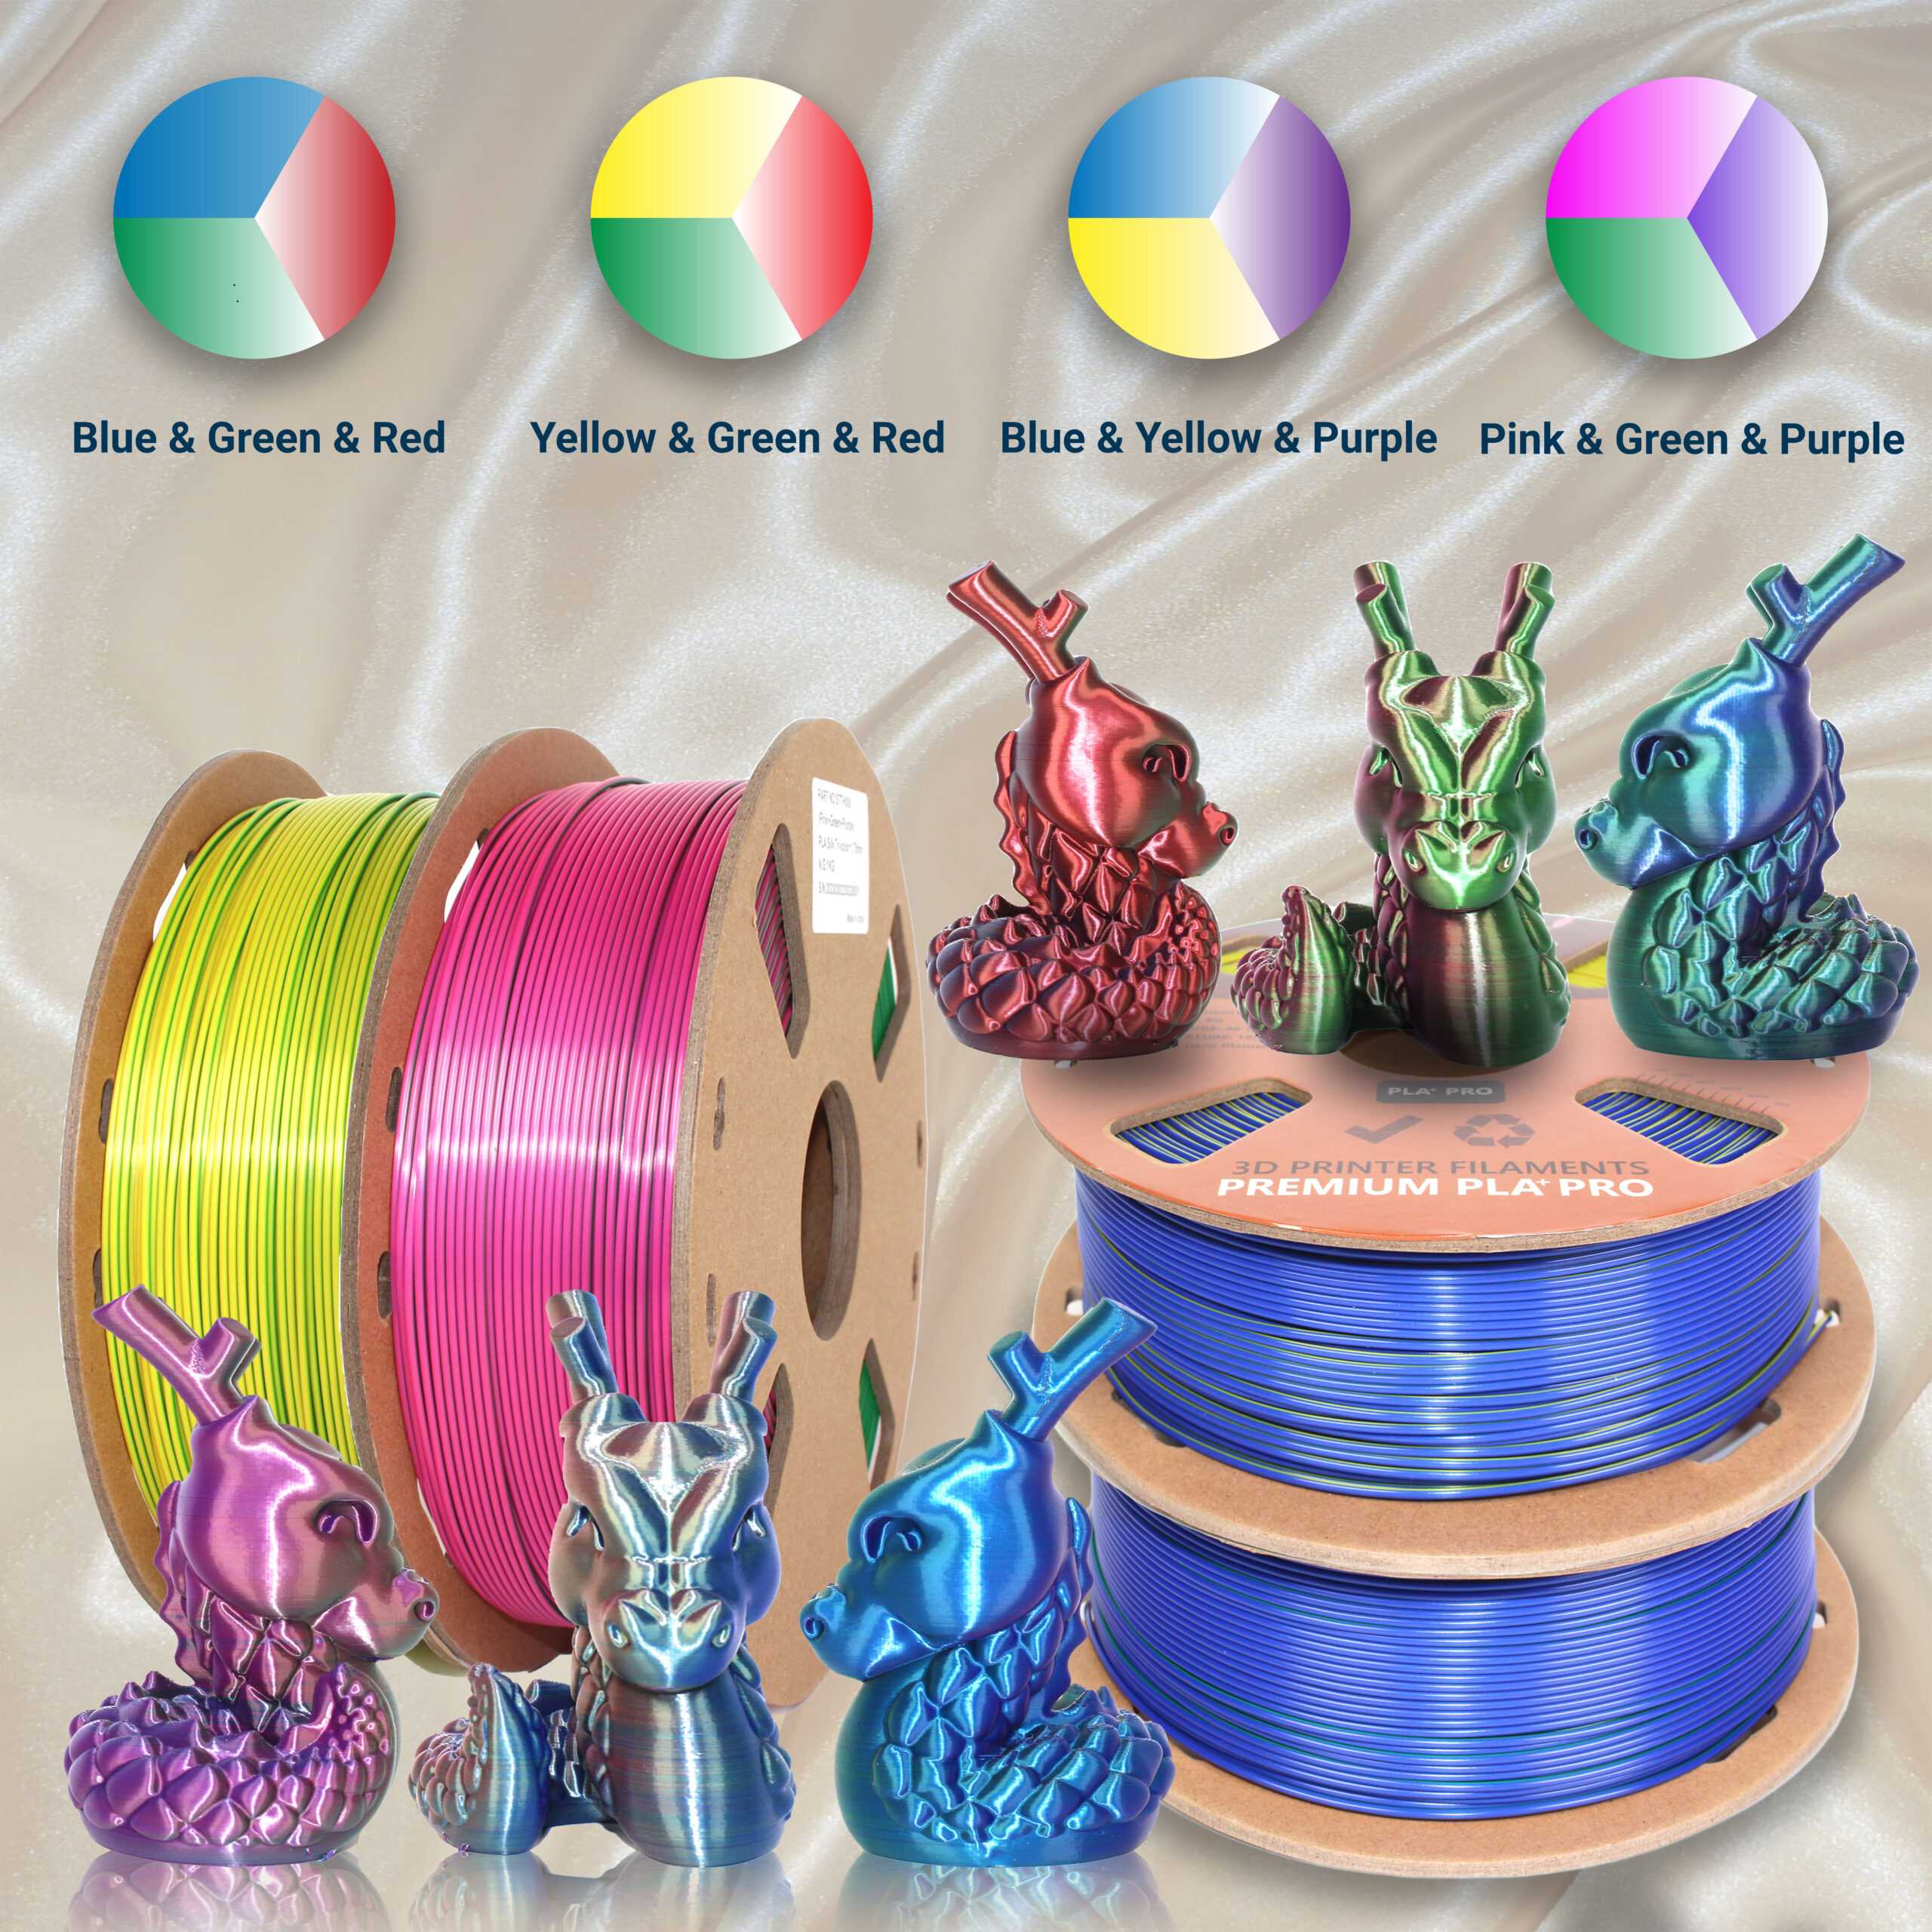 ELEGOO PLA Filament 1.75mm Purple 1KG, 3D Printer Filament Dimensional  Accuracy +/- 0.02mm, 1kg Cardboard Spool(2.2lbs) 3D Printing Filament Fits  for